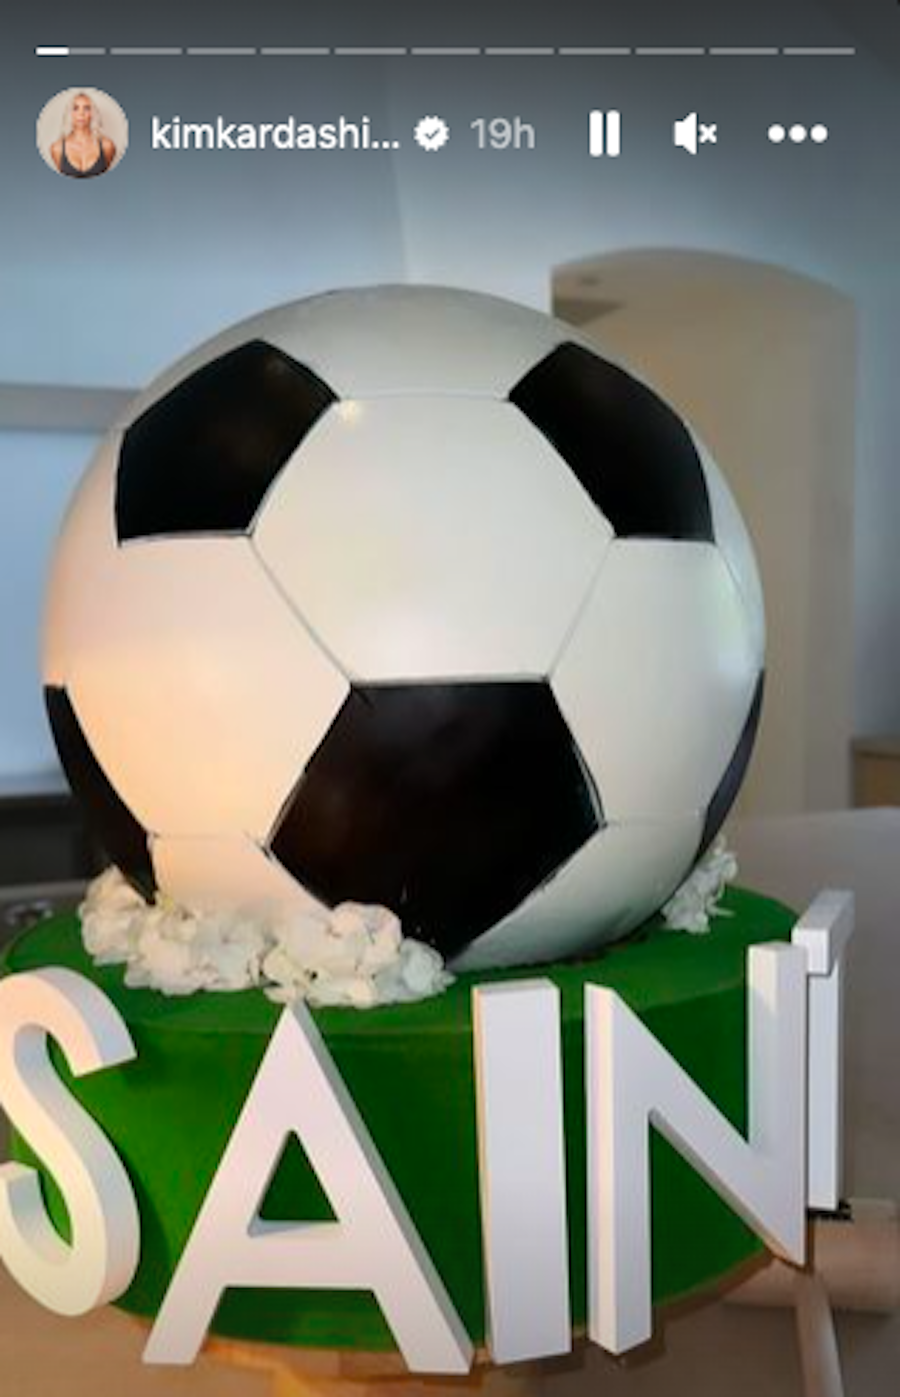 a football ball on a table